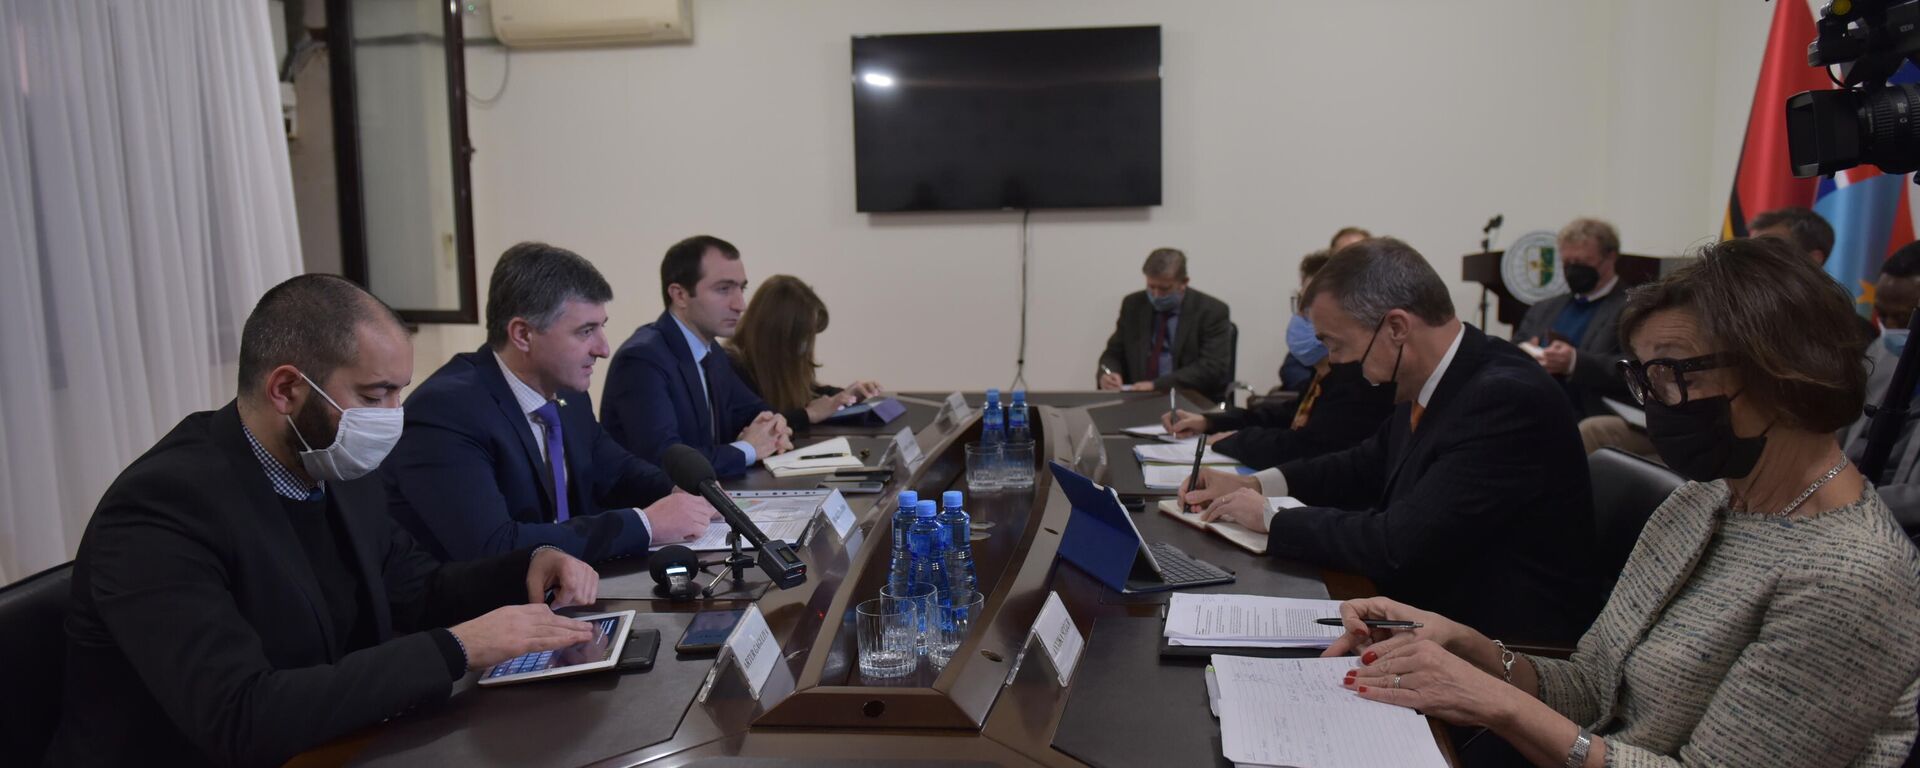 Сопредседатели Женевских дискуссий провели встречу в МИД Абхазии  - Sputnik Аҧсны, 1920, 17.11.2021